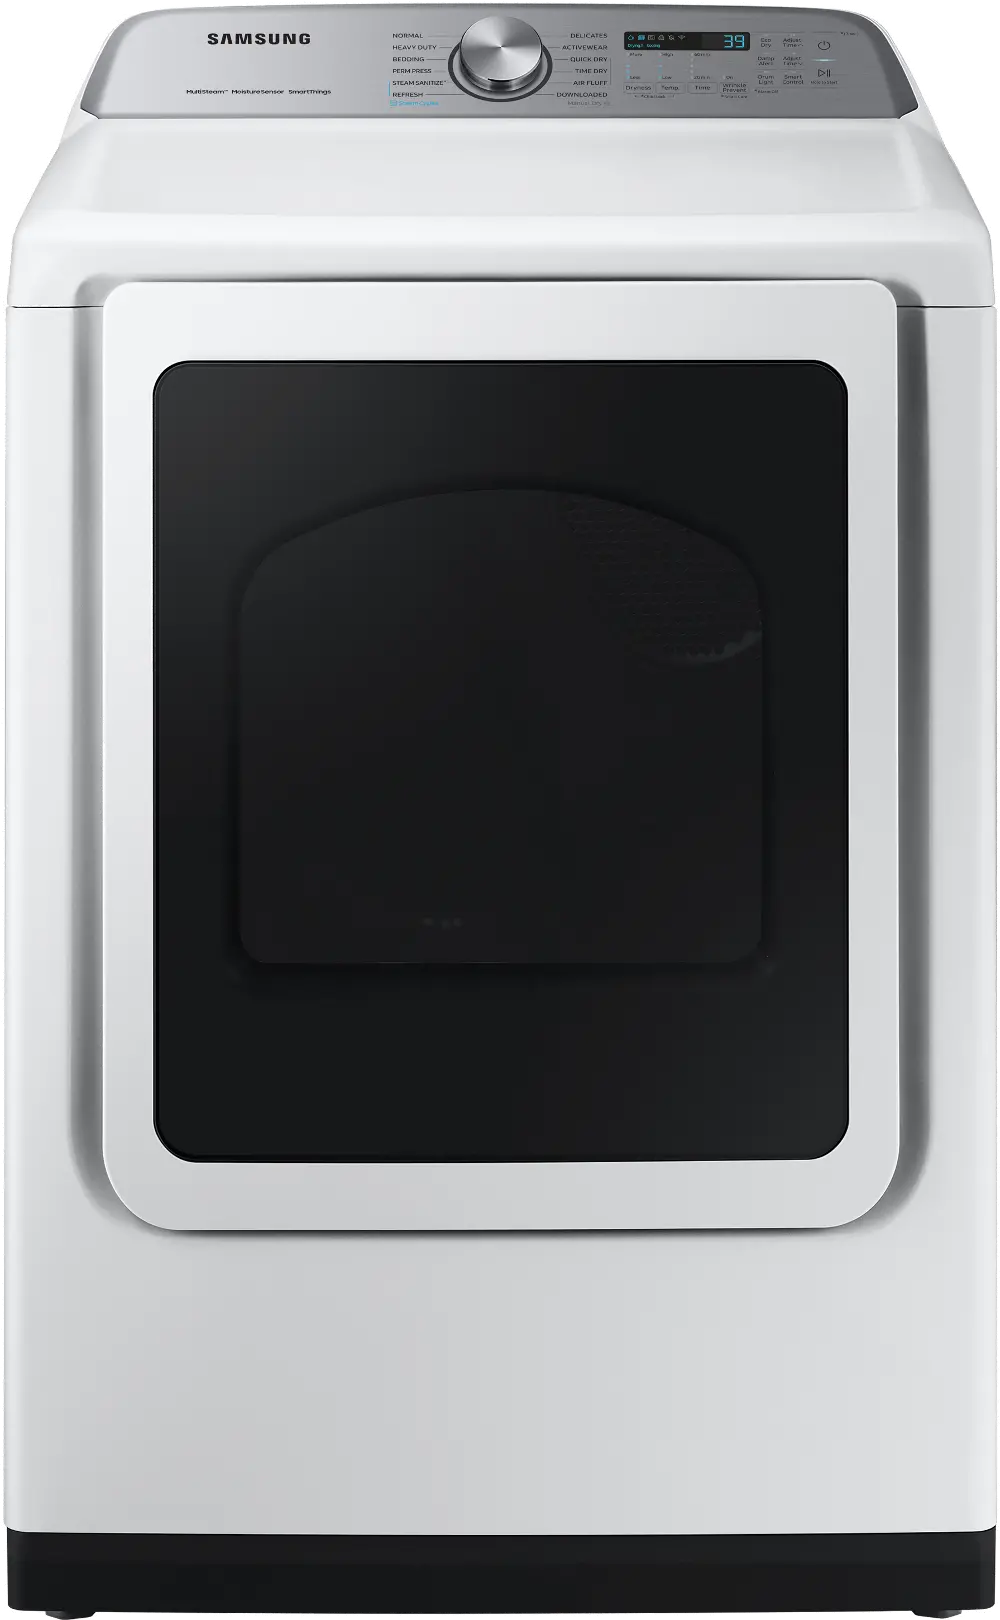 DVG52A5500W Samsung Gas Dryer - White, 52A5500-1